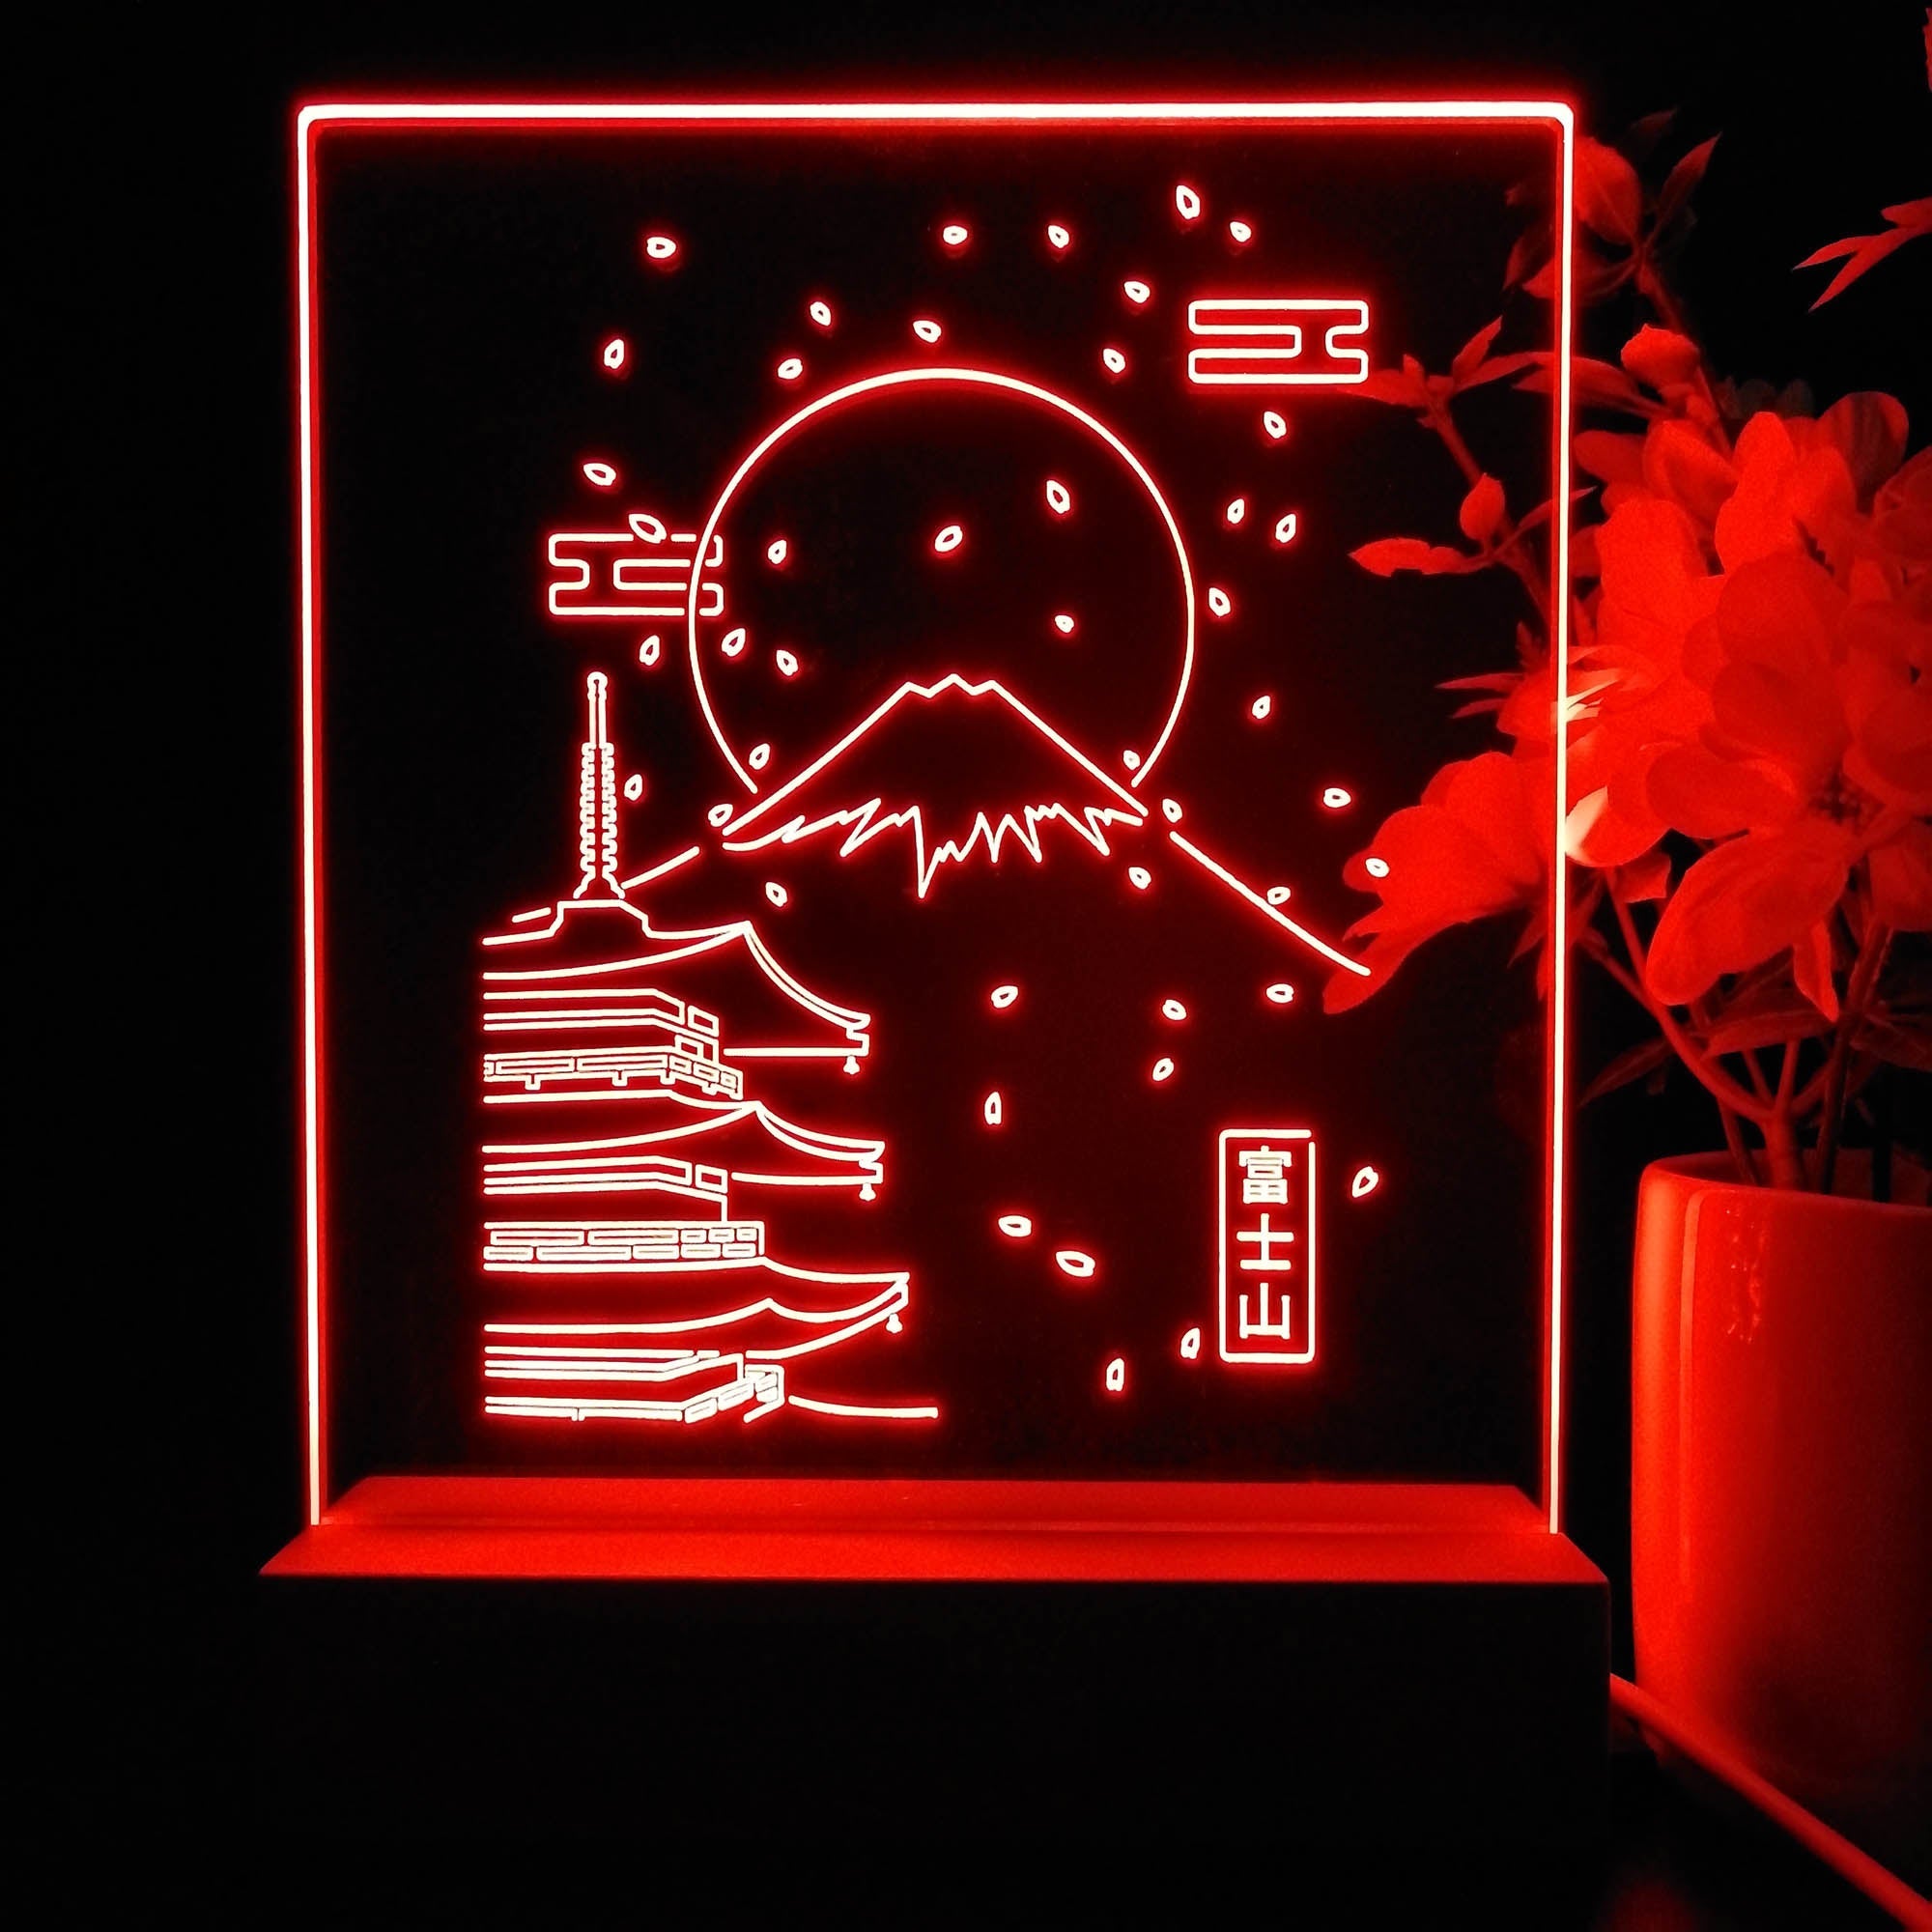 Japan Fuji Game Room LED Sign Lamp Display